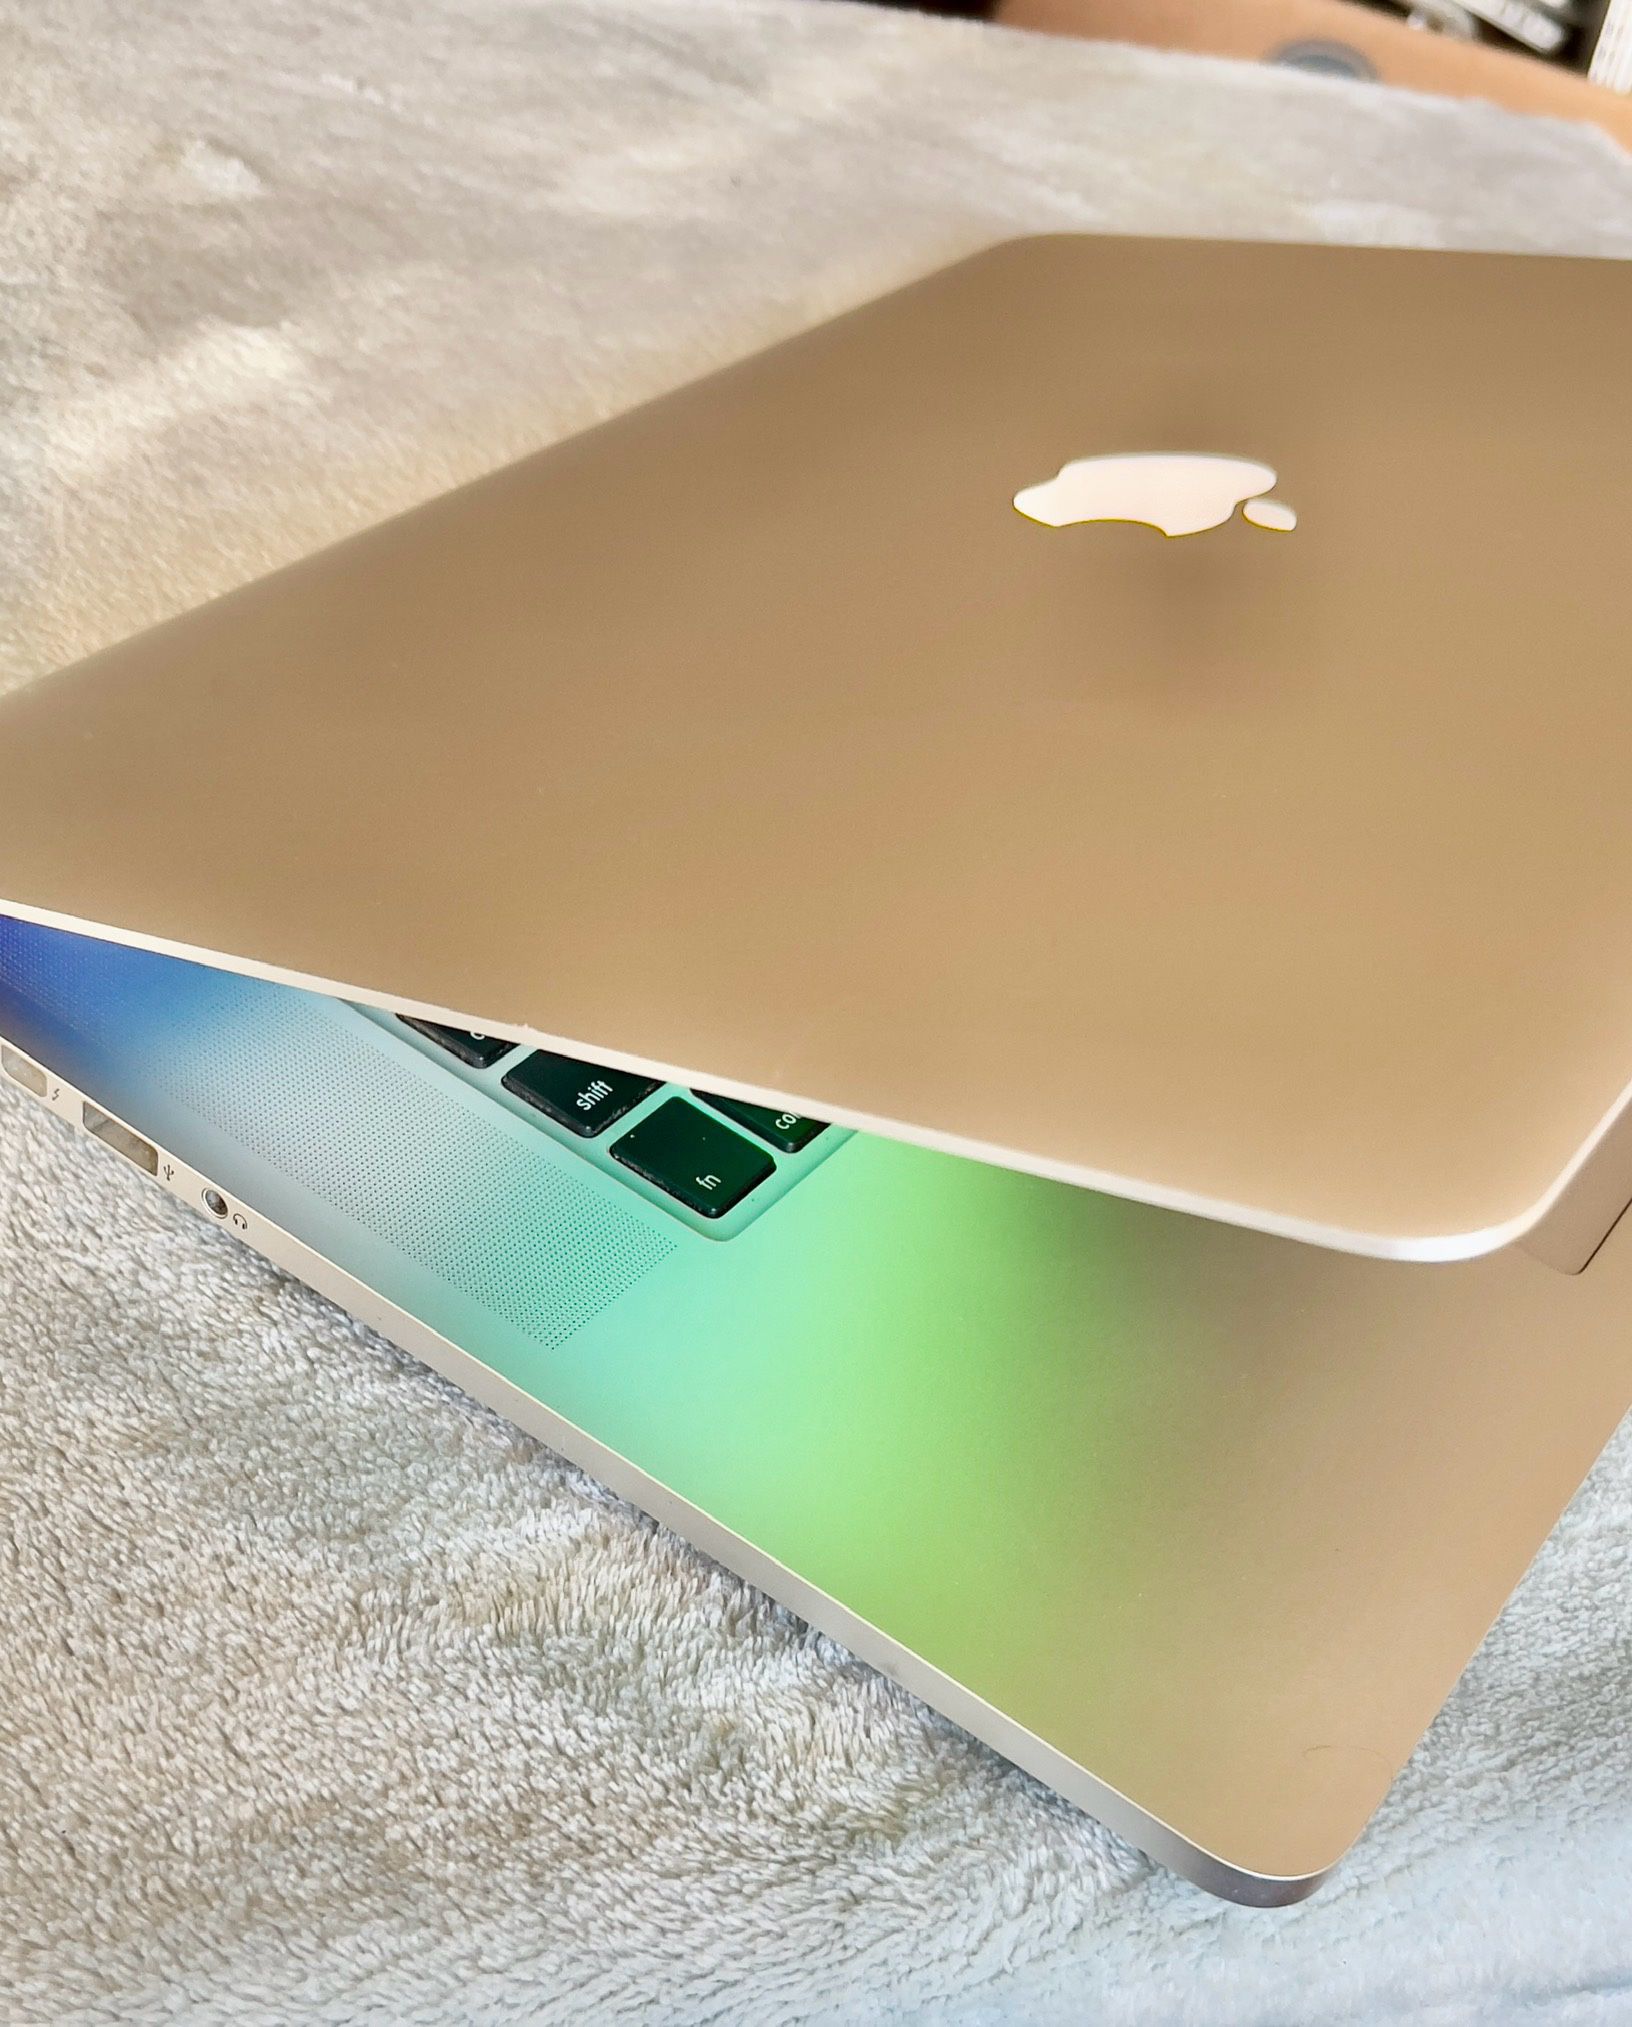 Apple MacBook Pro Retina 15” Quad Core I7, 16GB Ram, 256GB SSD $375 Firm 